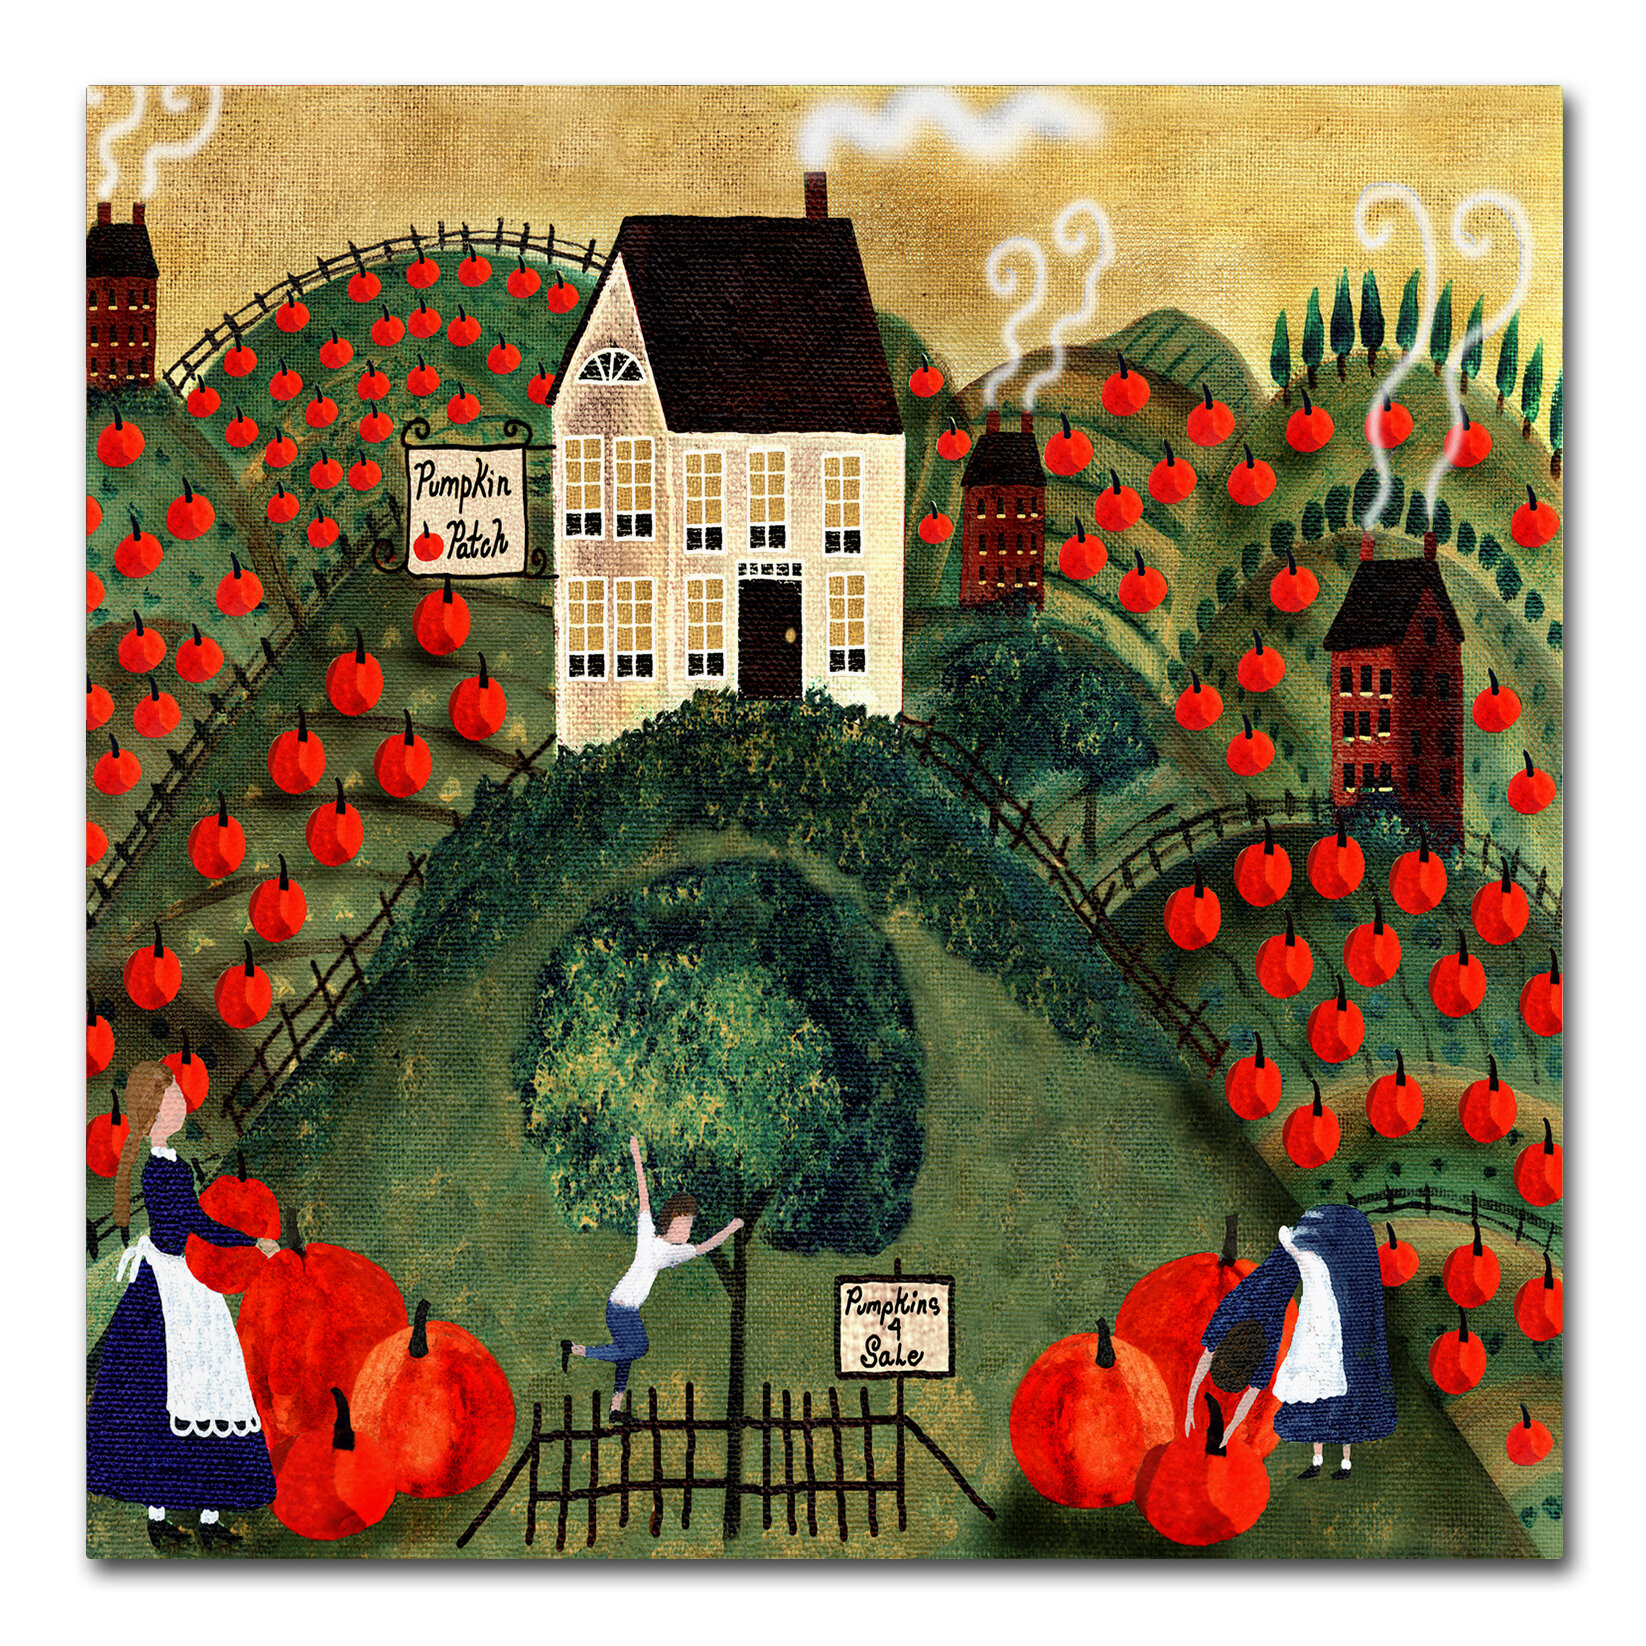 Pumpkin Red Barn Folk Art On Canvas by Cheryl Bartley Print